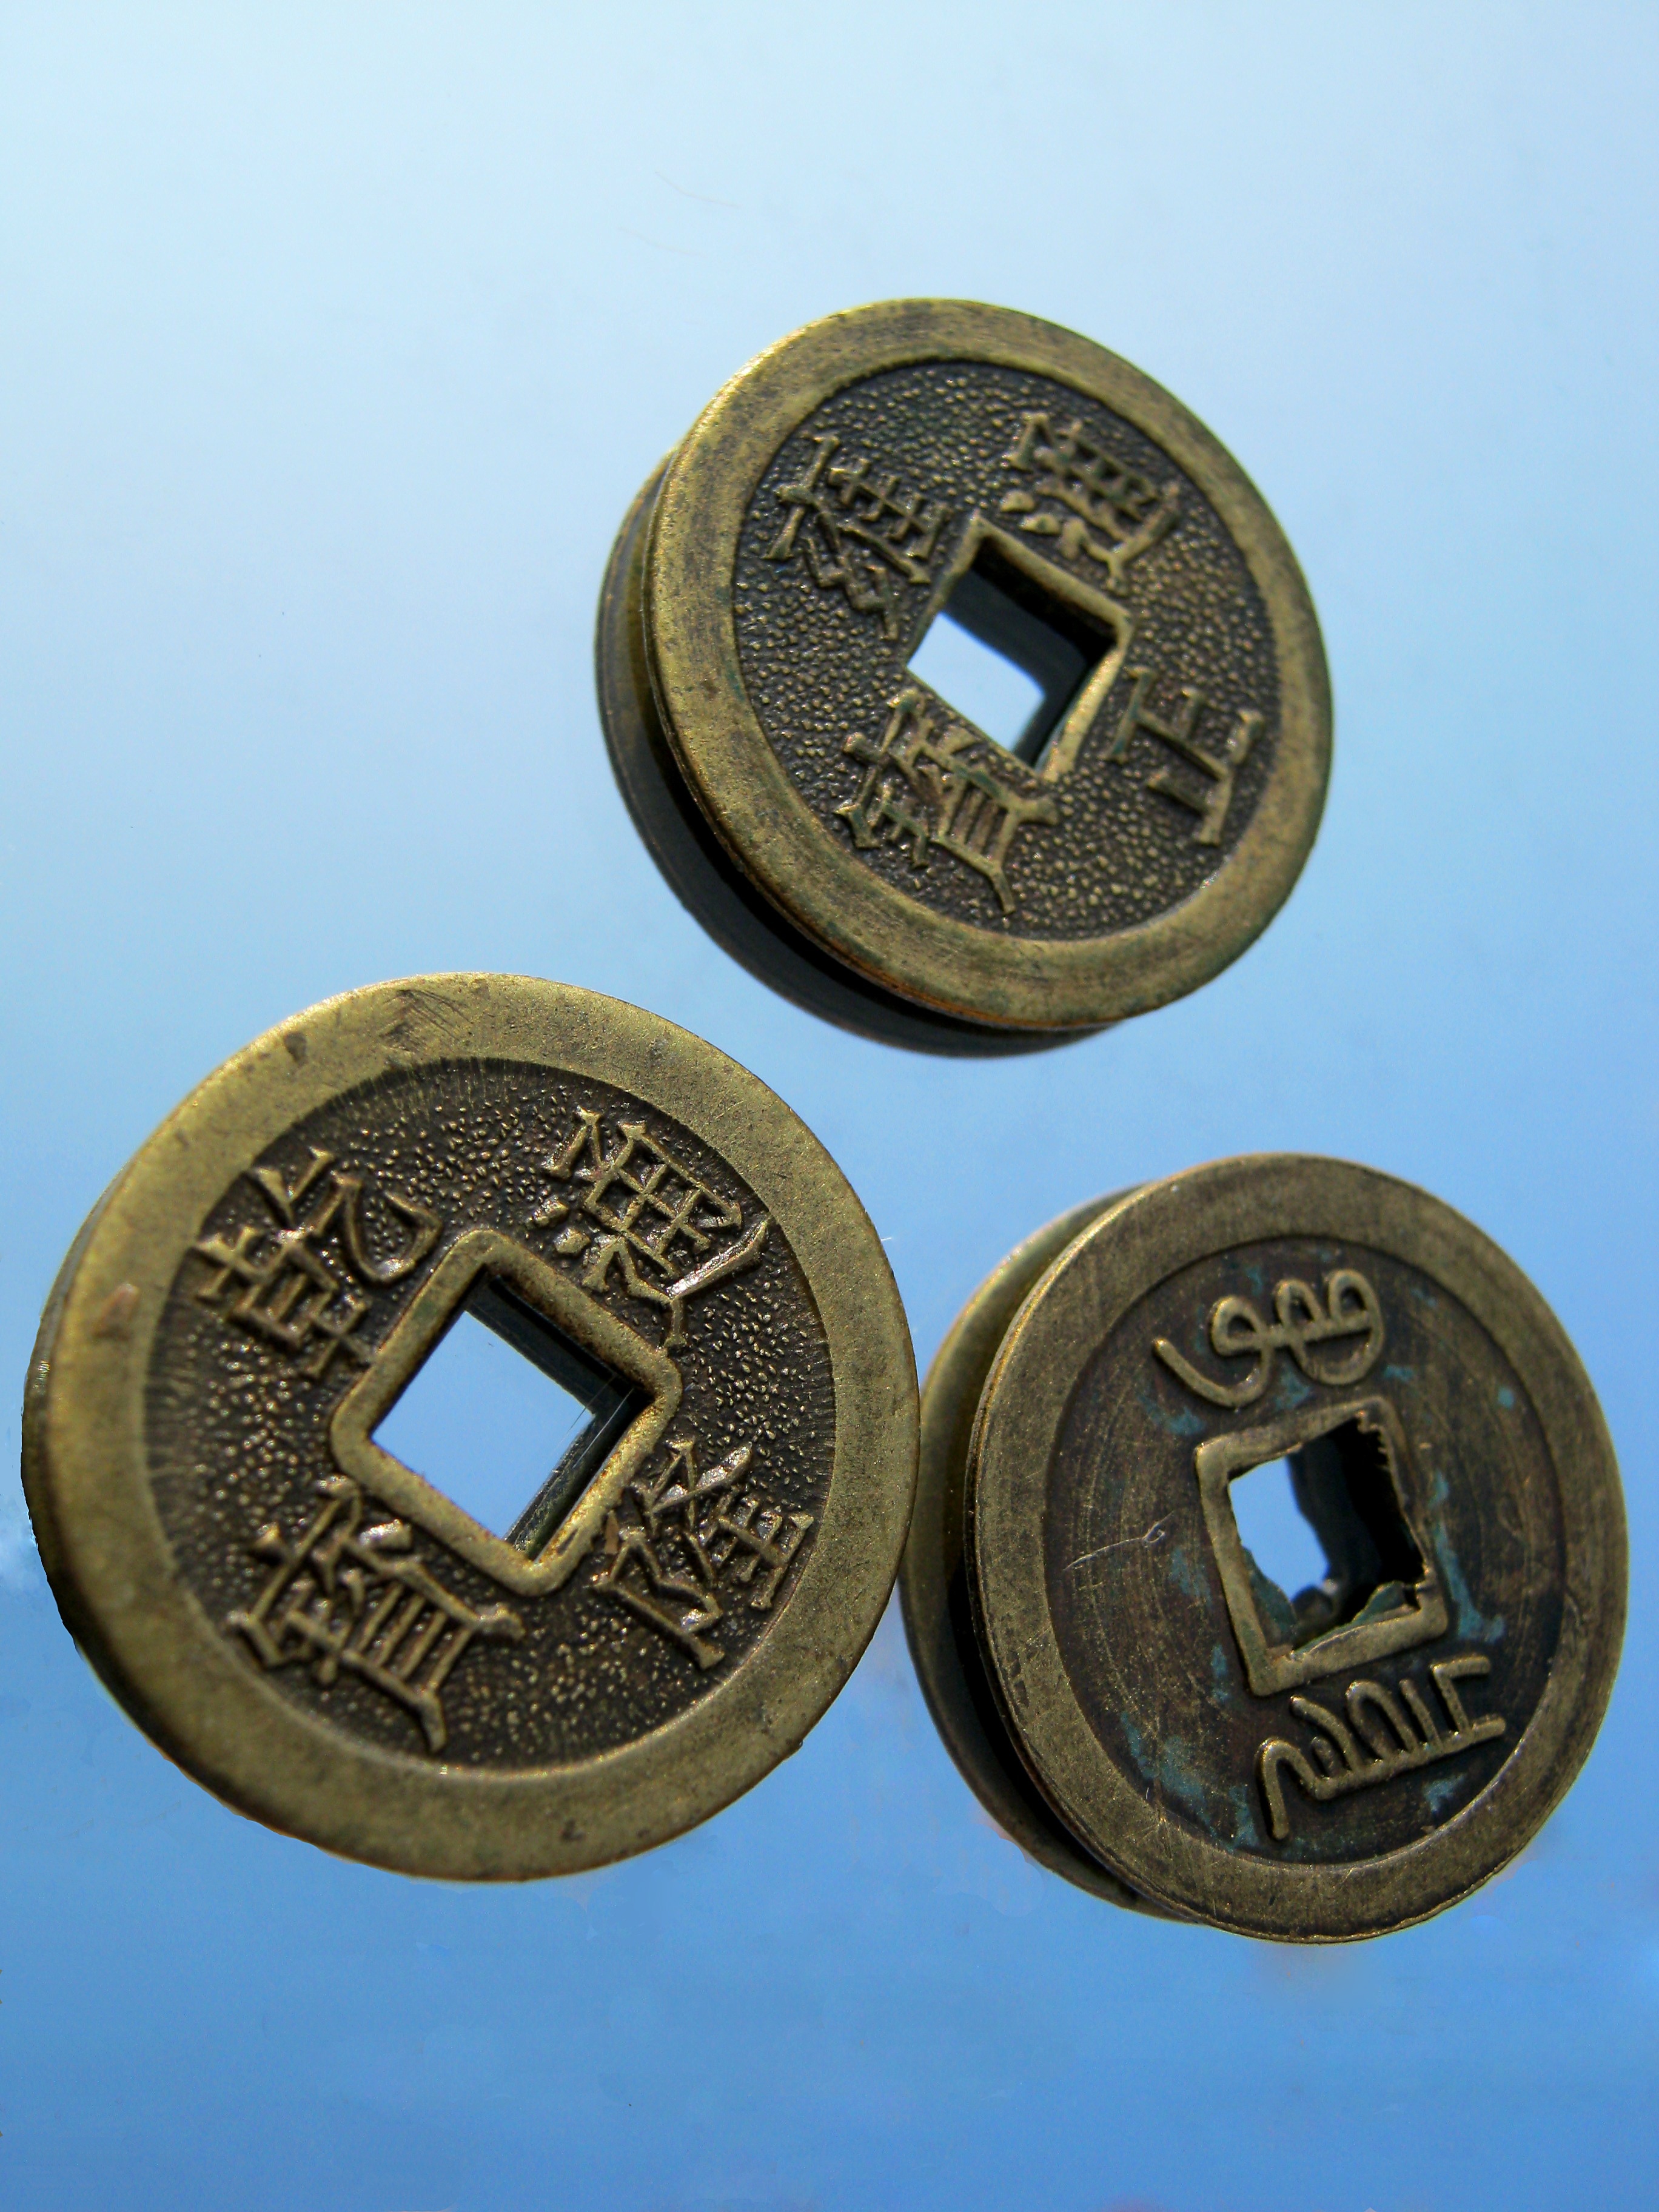 3 brass round coins